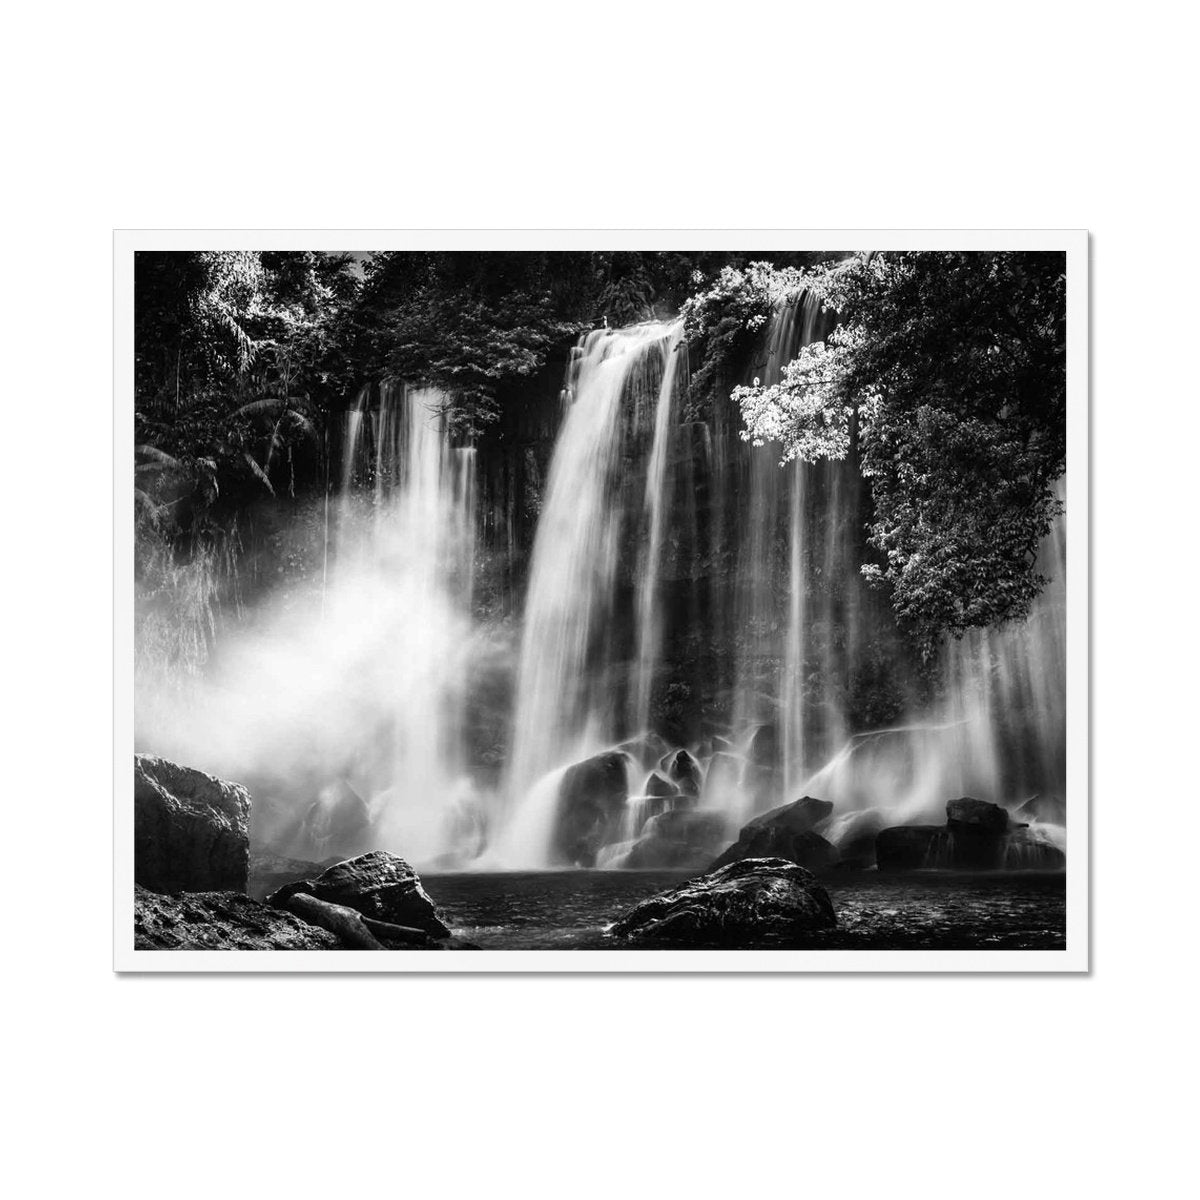 Kulen Mountain Waterfall - Sean Lee-Davies Sean Lee Davies